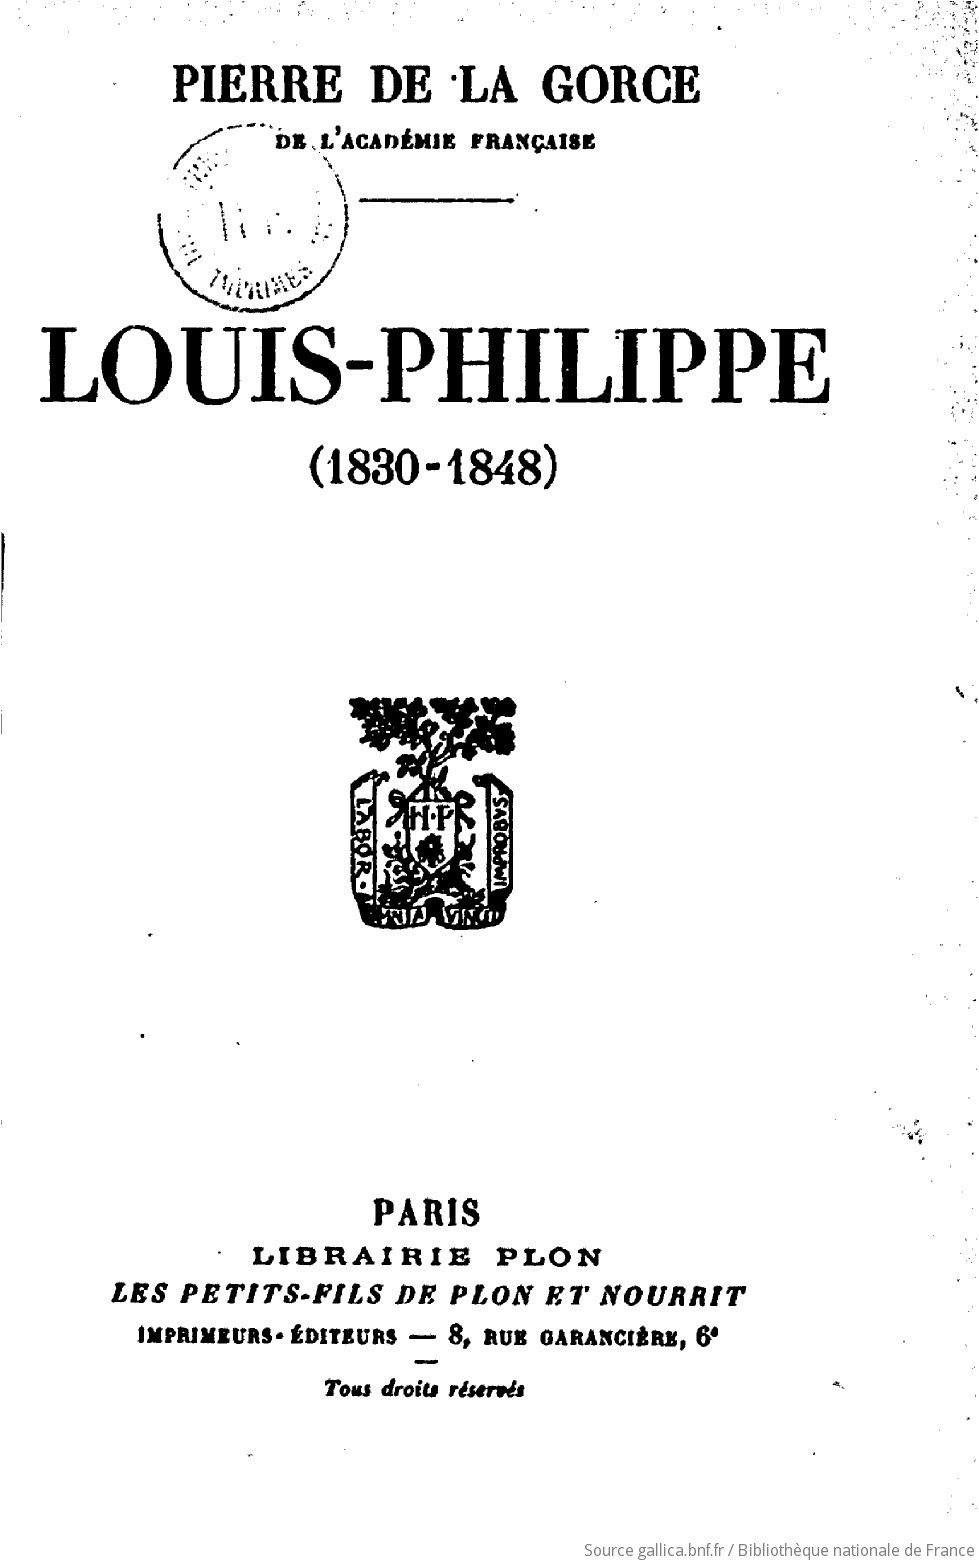 Louis Philippe 1830-1848 by Pierre De La Gorce - Paperback